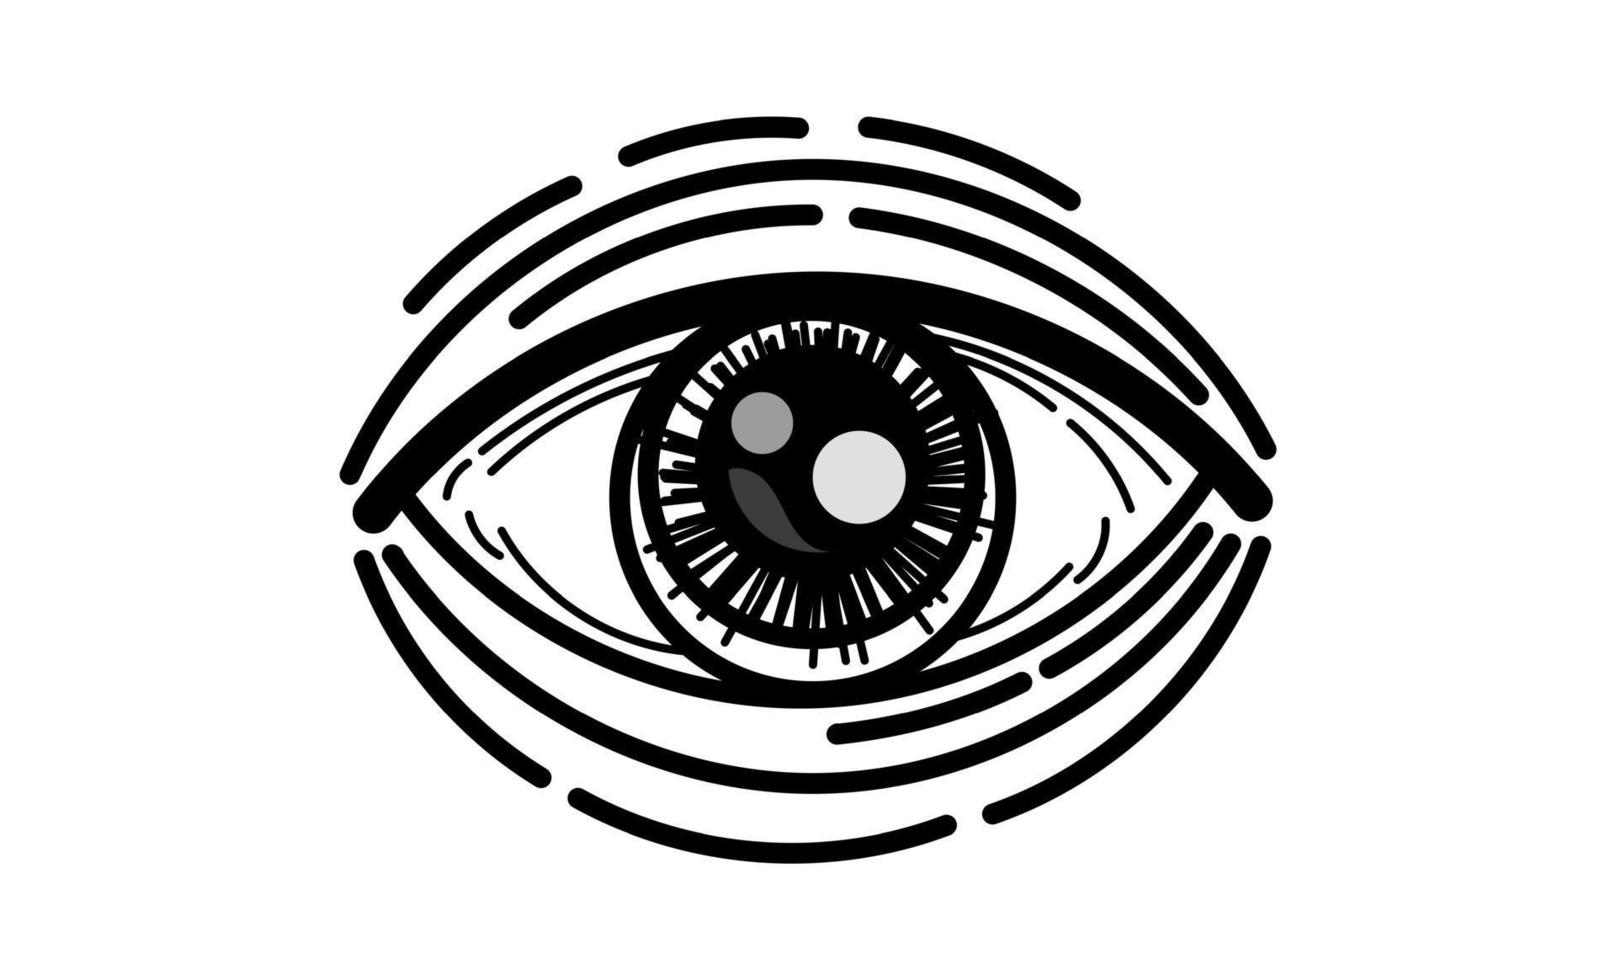 ilustração vetorial do olho humano em estilo gravado vetor